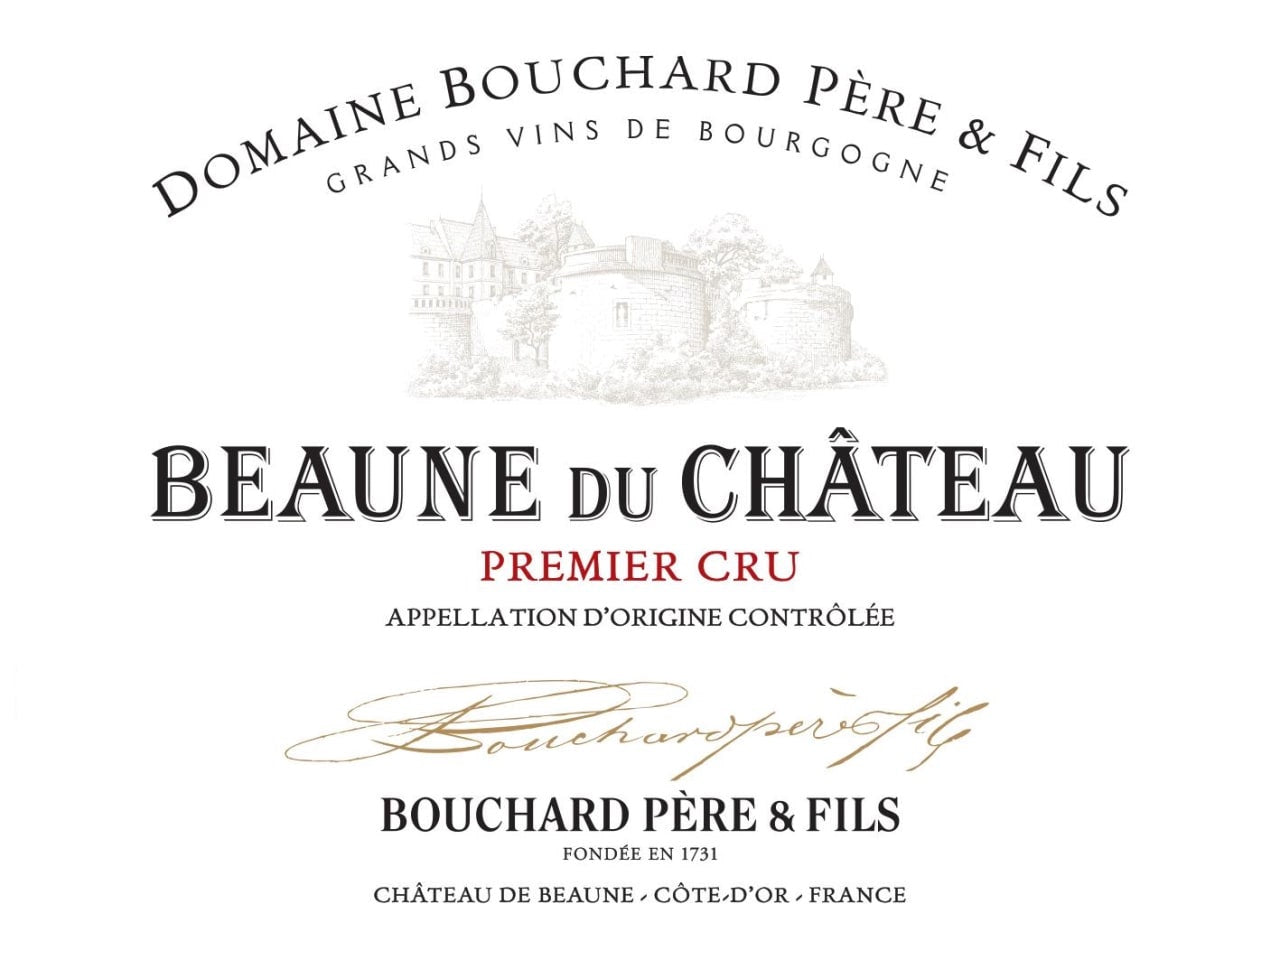 Bouchard Pere & Fils "Beaune du Chateau" Premier Cru Rouge